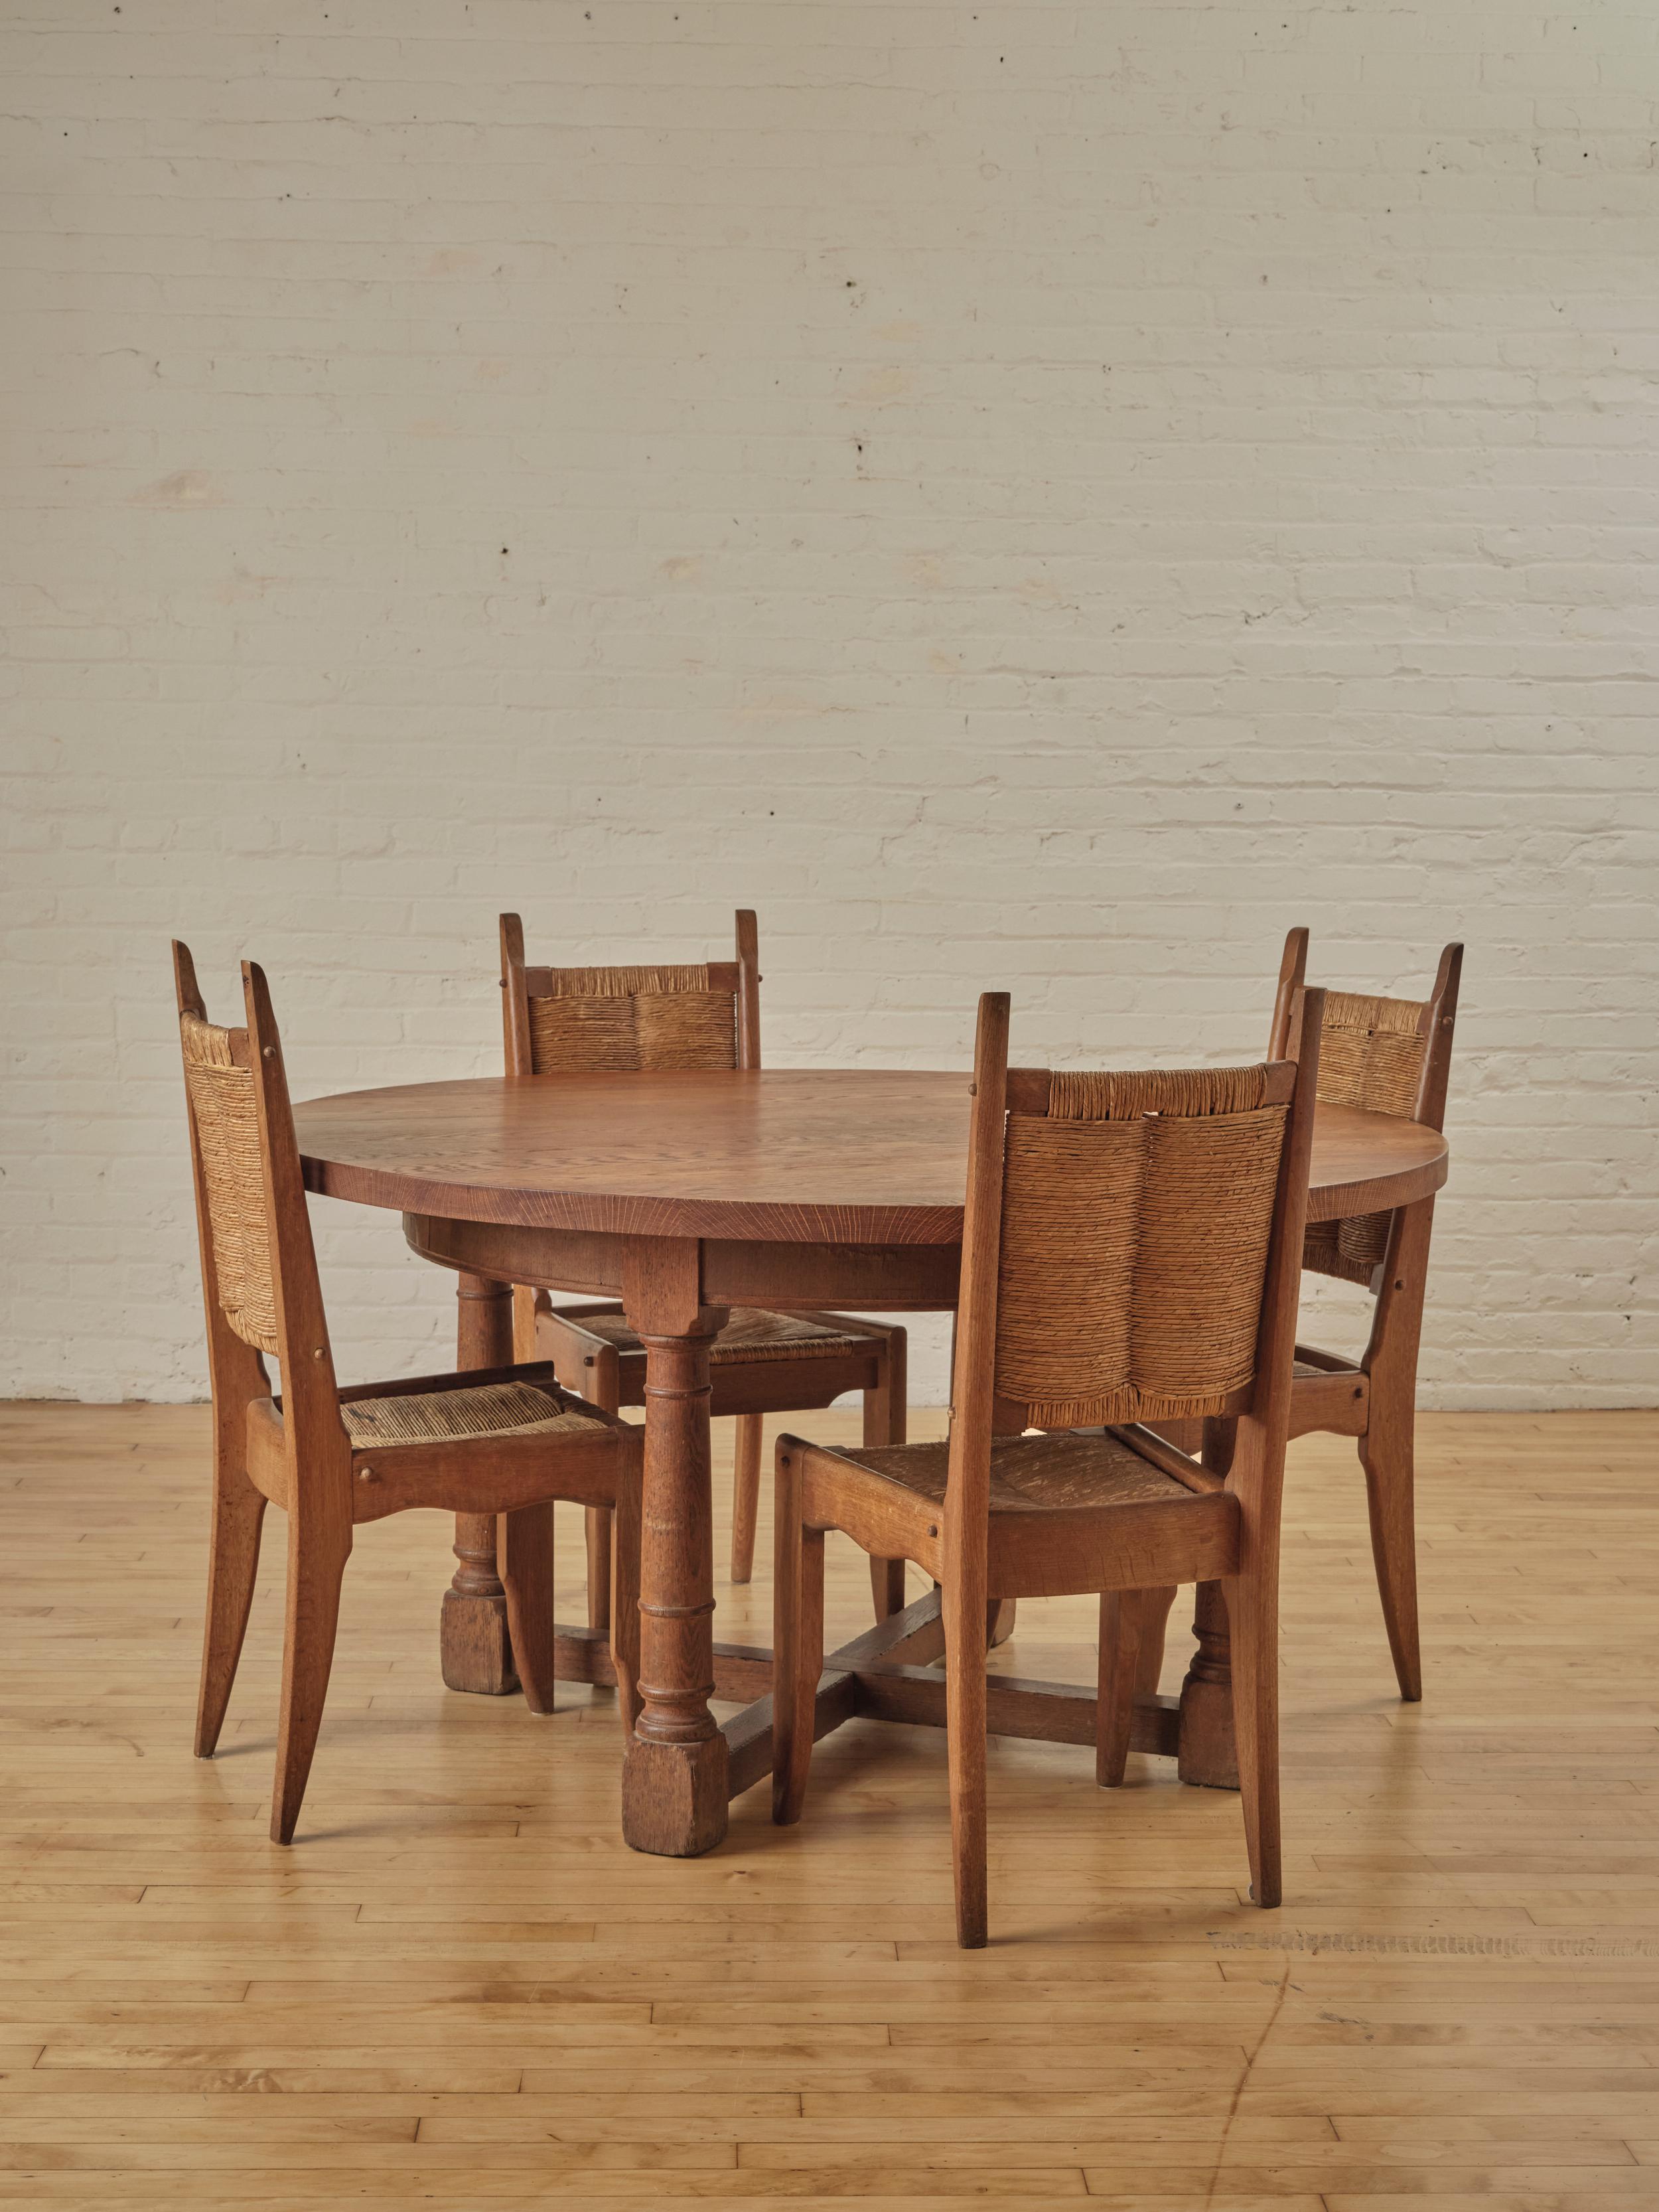 Table de salle à manger circulaire du début des années 1900, fabriquée en bois de chêne avec quatre pieds joints.

